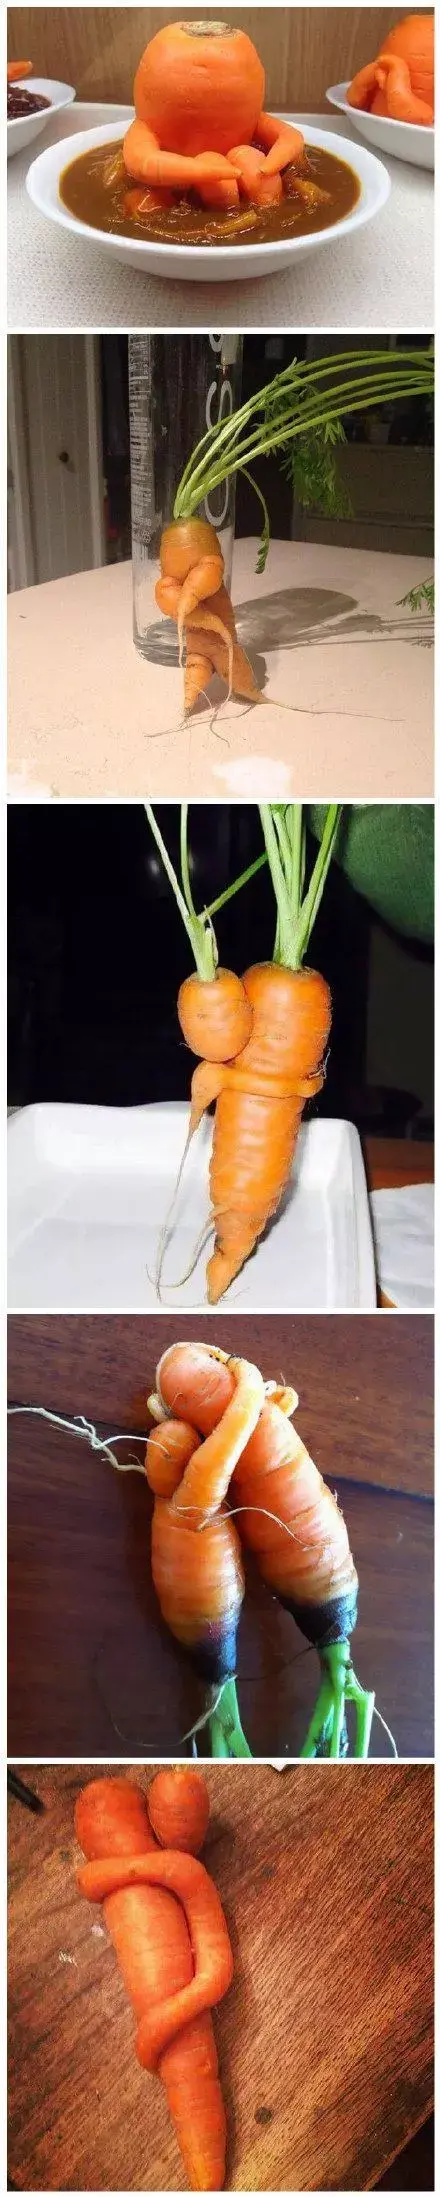 一些长得歪瓜裂枣的蔬菜水果,永远只能出现在网上的内涵图片和搞笑